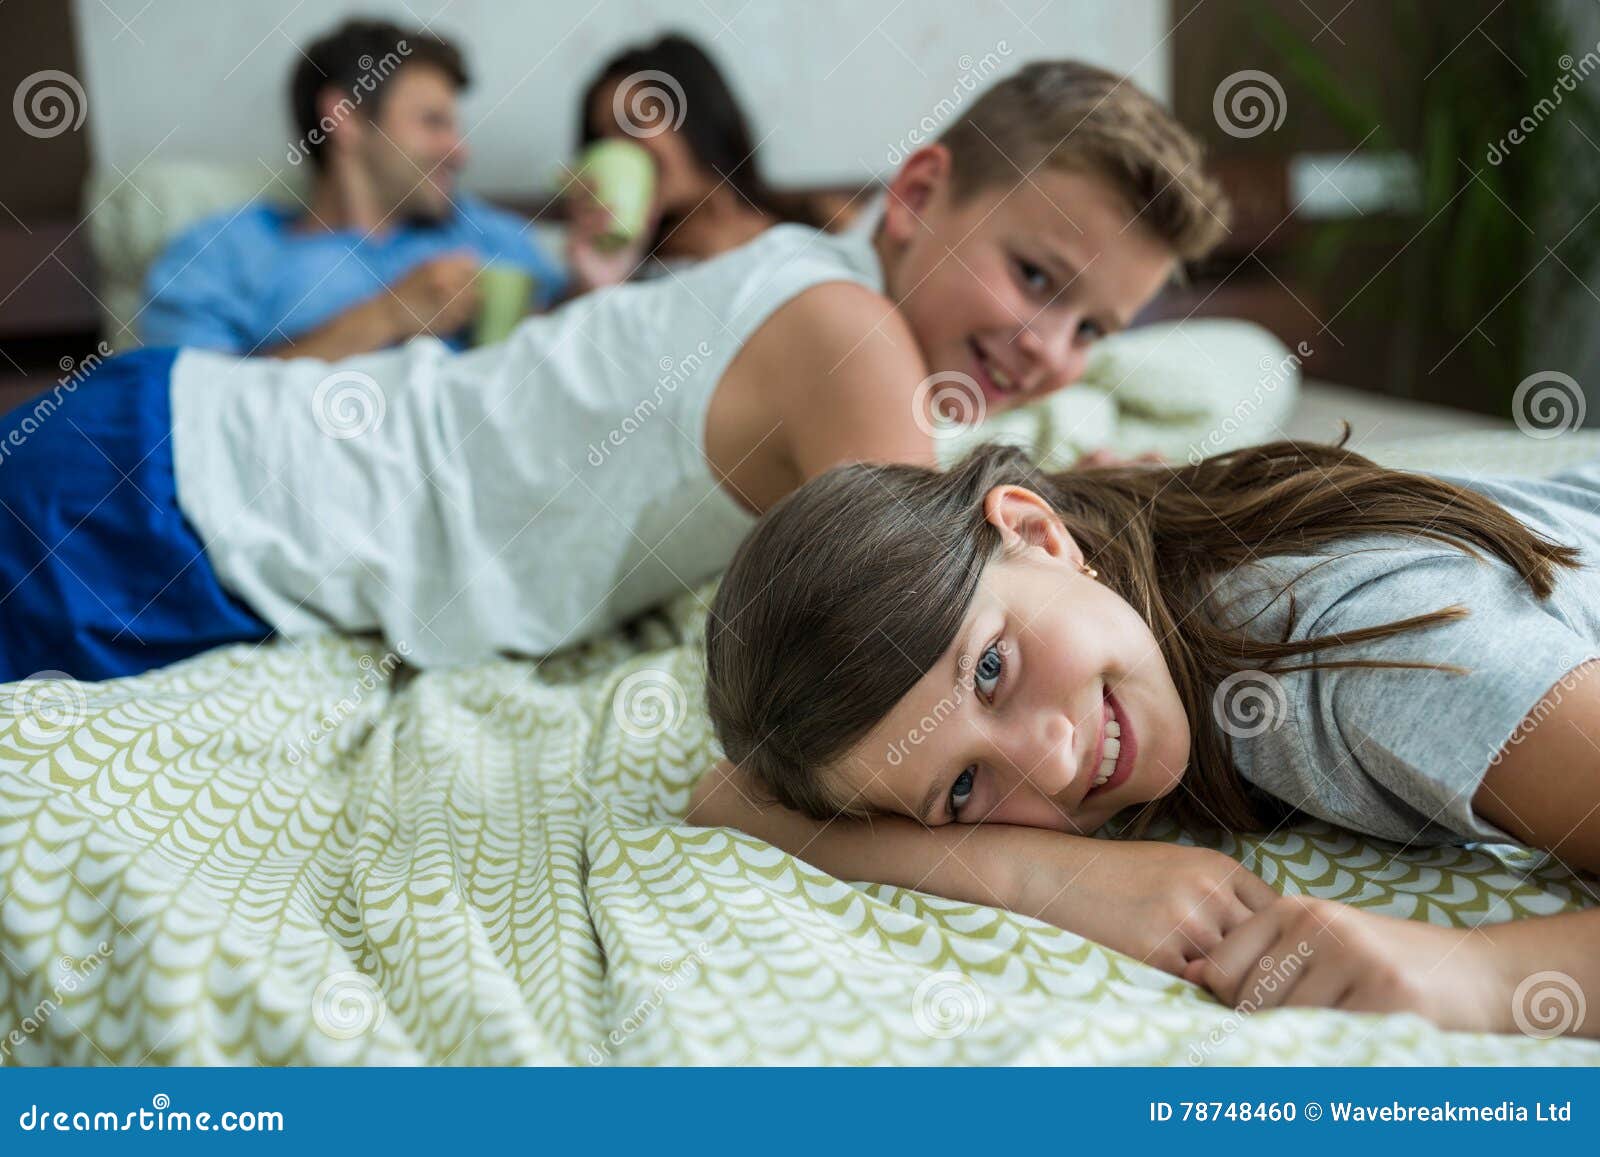 Сестра залезла спящему брату. Семья лежит на кровати. Семья валяется в постели. Семья на кровати домашнее. Family лежать на кровати.